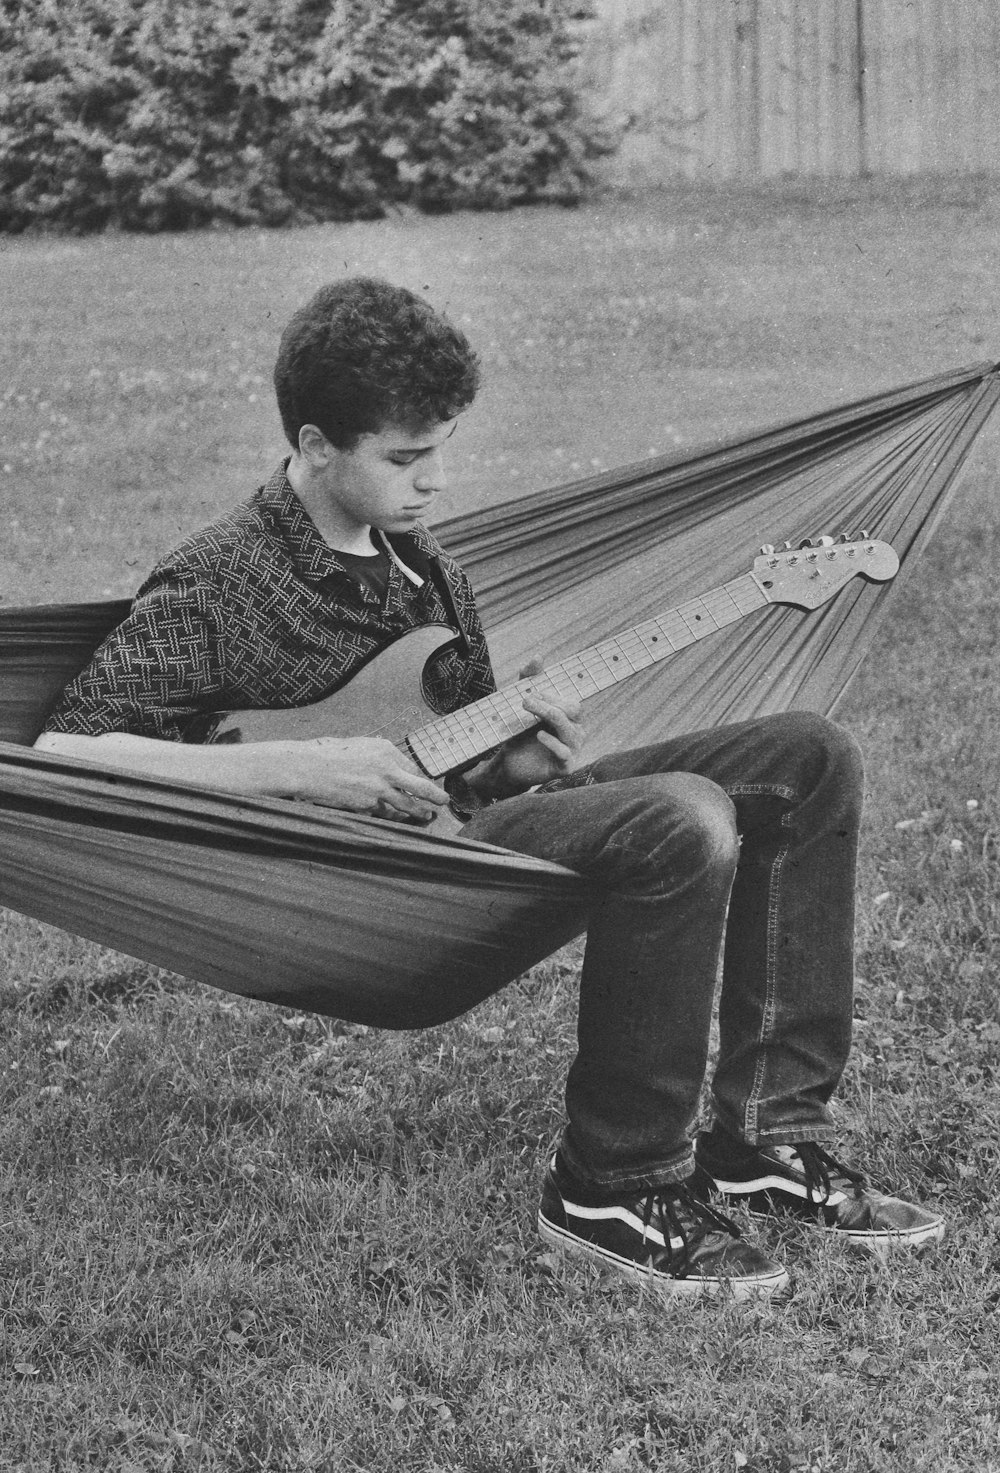 a boy sitting in a hammock playing a guitar